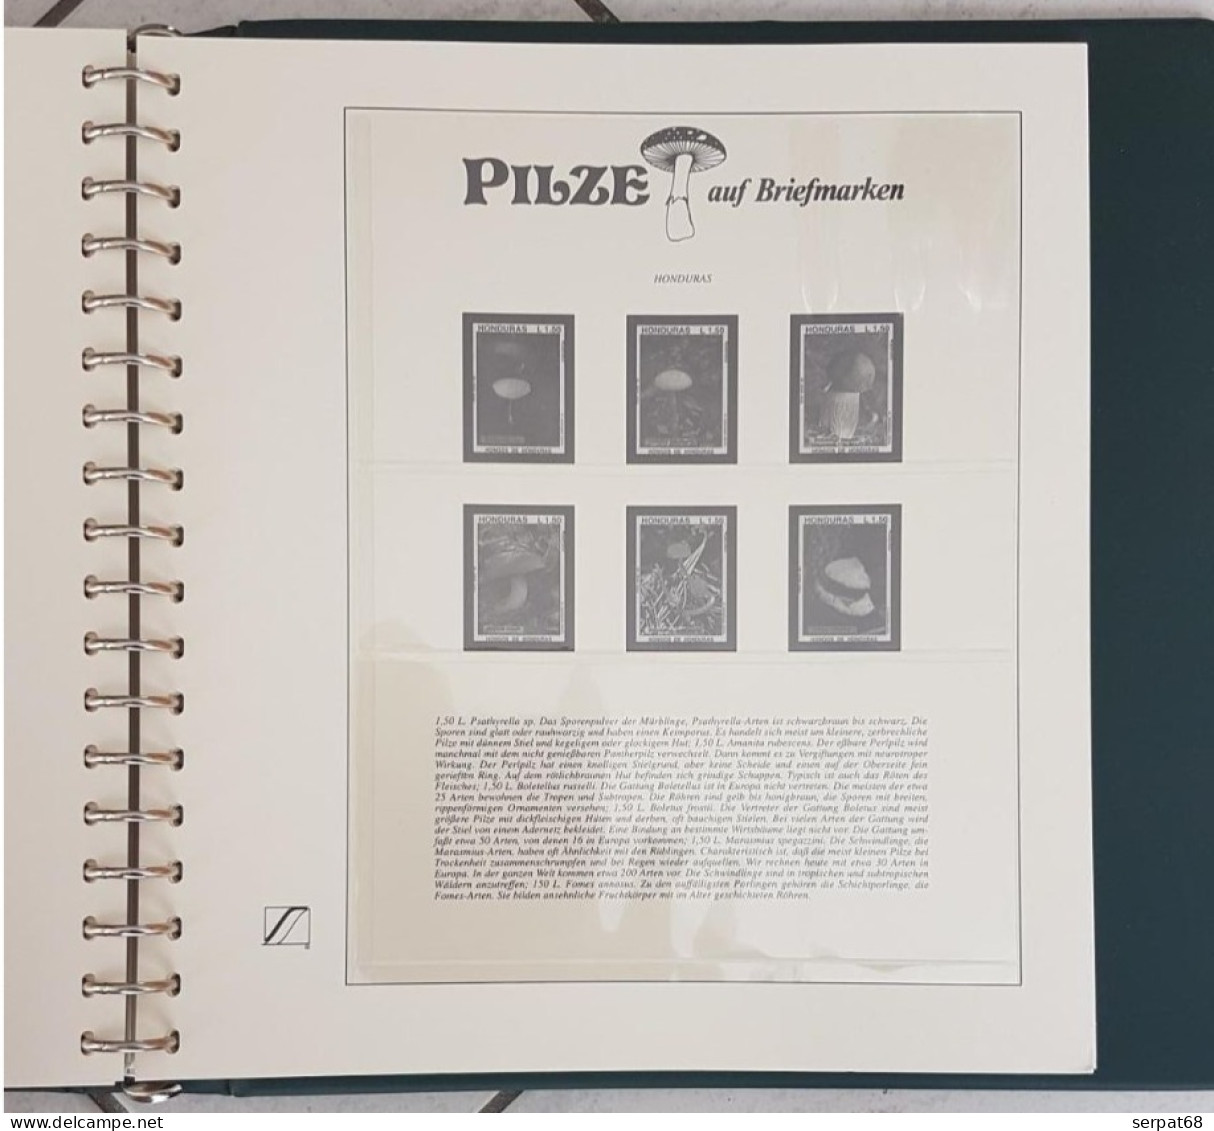 Album pré-imprimé pour timbres Champignons - Pilze auf Briefmarken